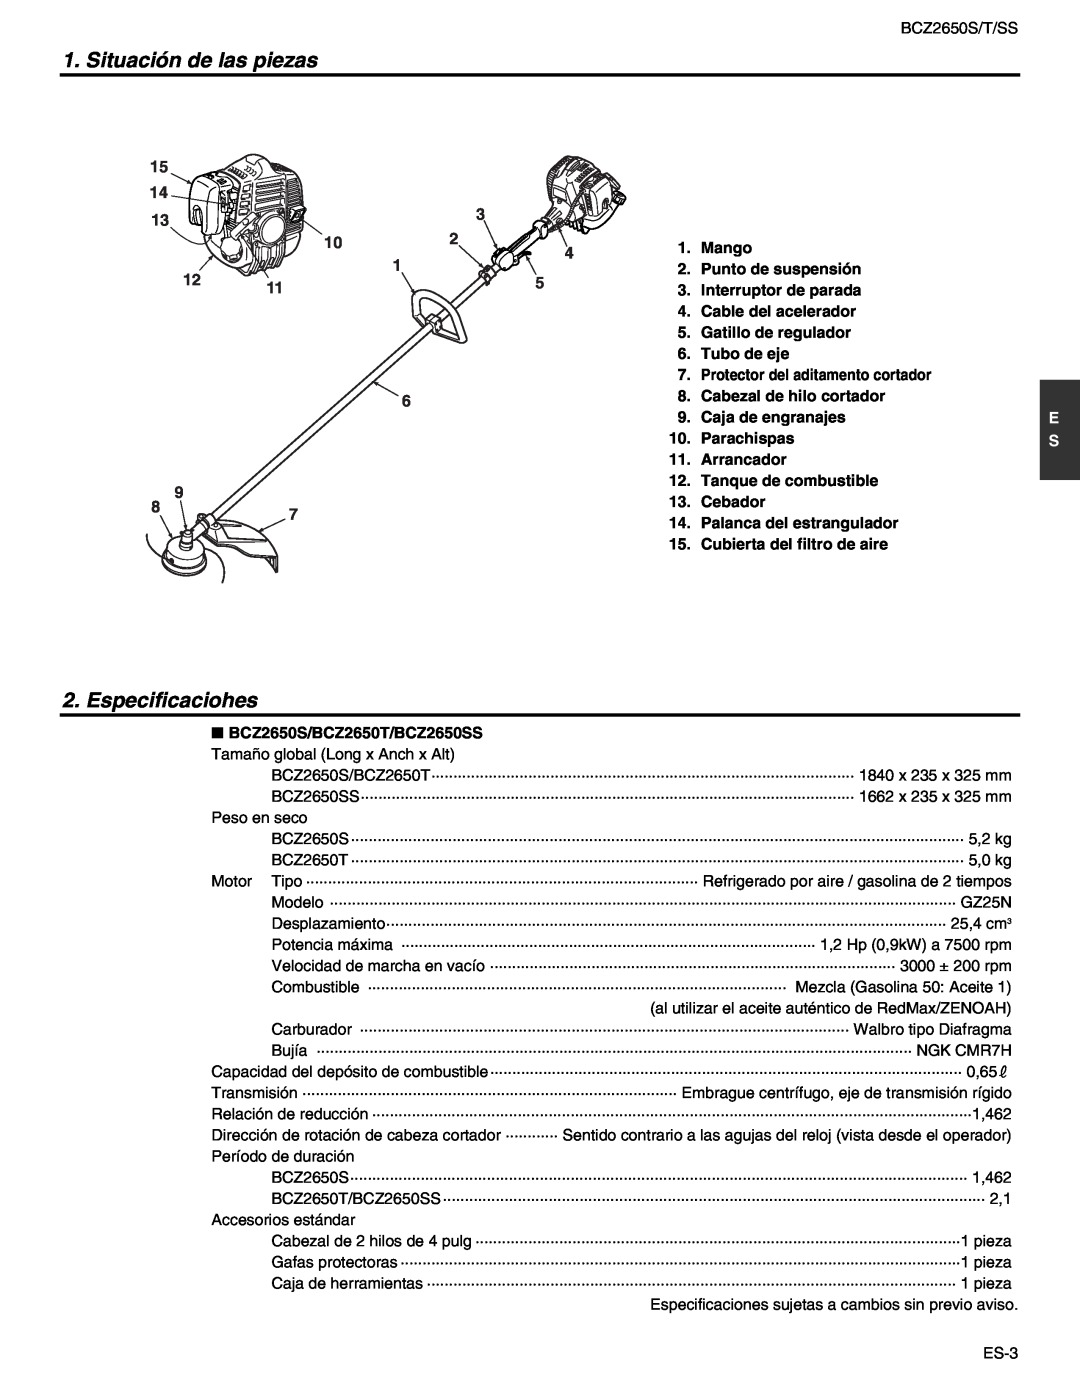 RedMax BCZ2650T, BCZ2650SS manual Situación de las piezas, Especificaciohes 